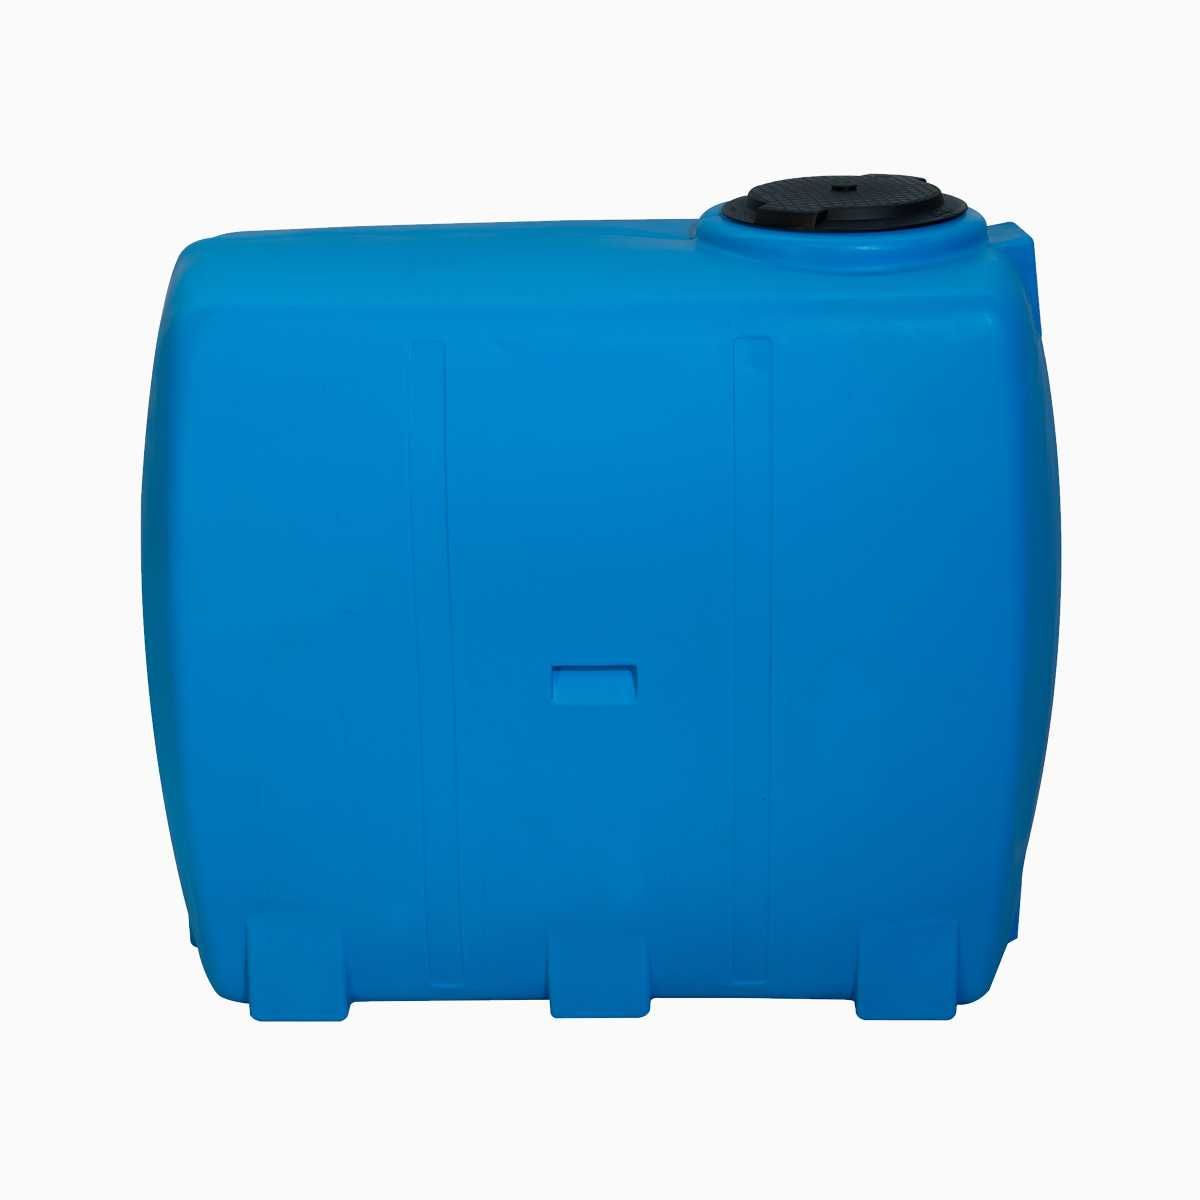 Rezervor suprateran cilindric orizontal 2000 litri (tip cisterna)